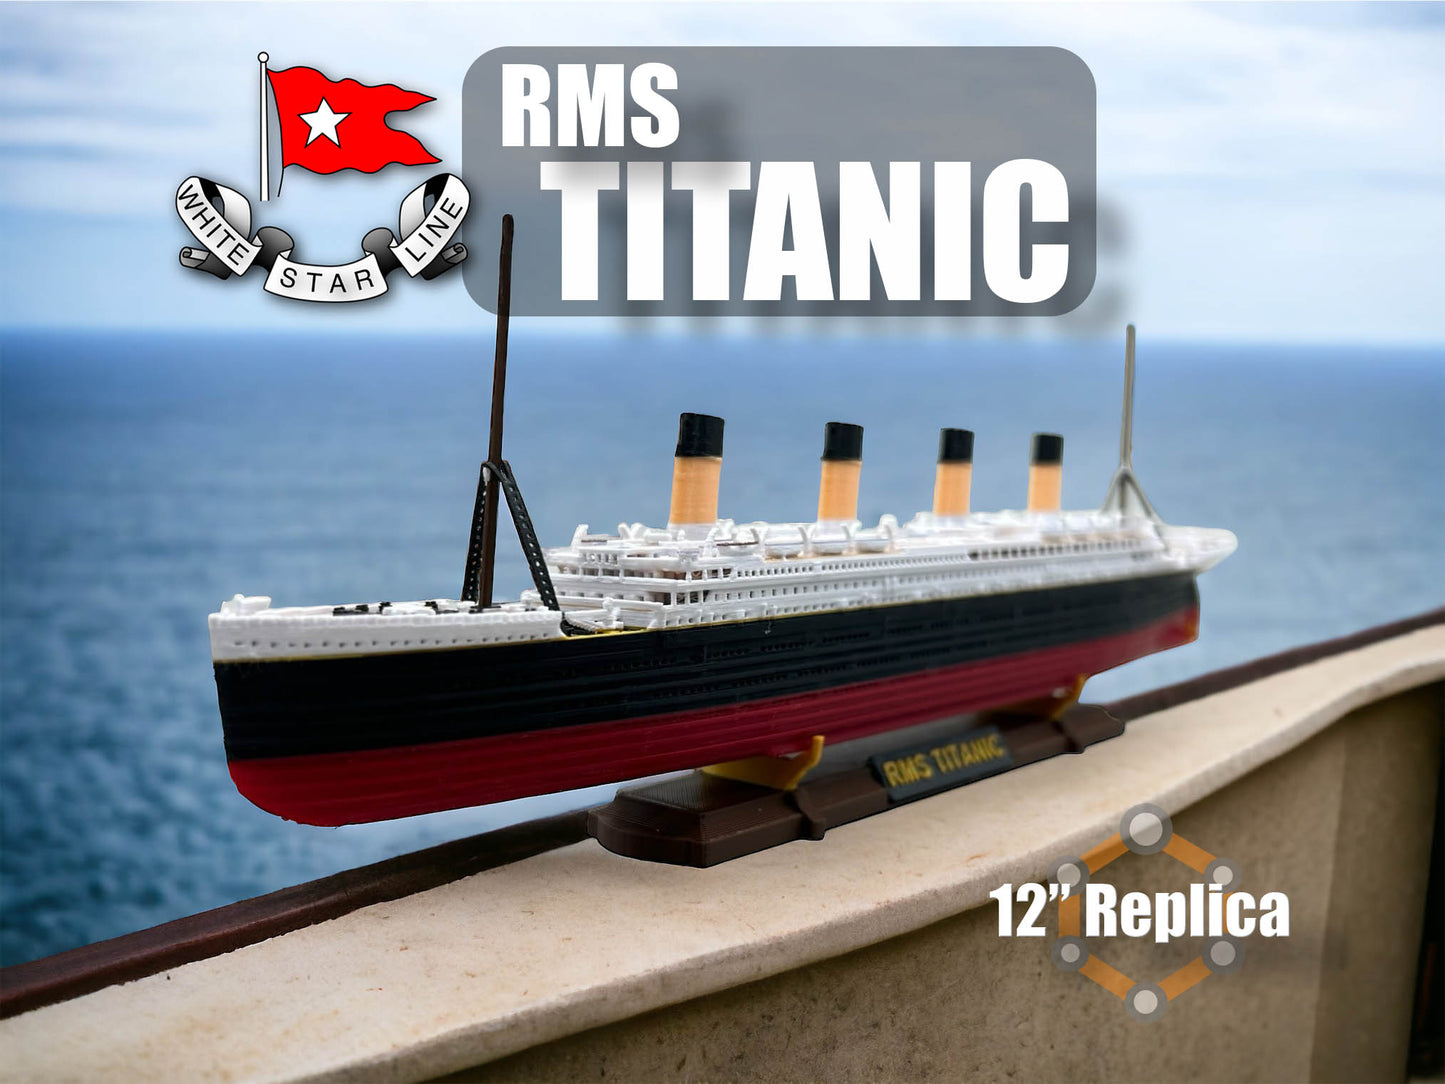 12” RMS Titanic Replica With Iceberg